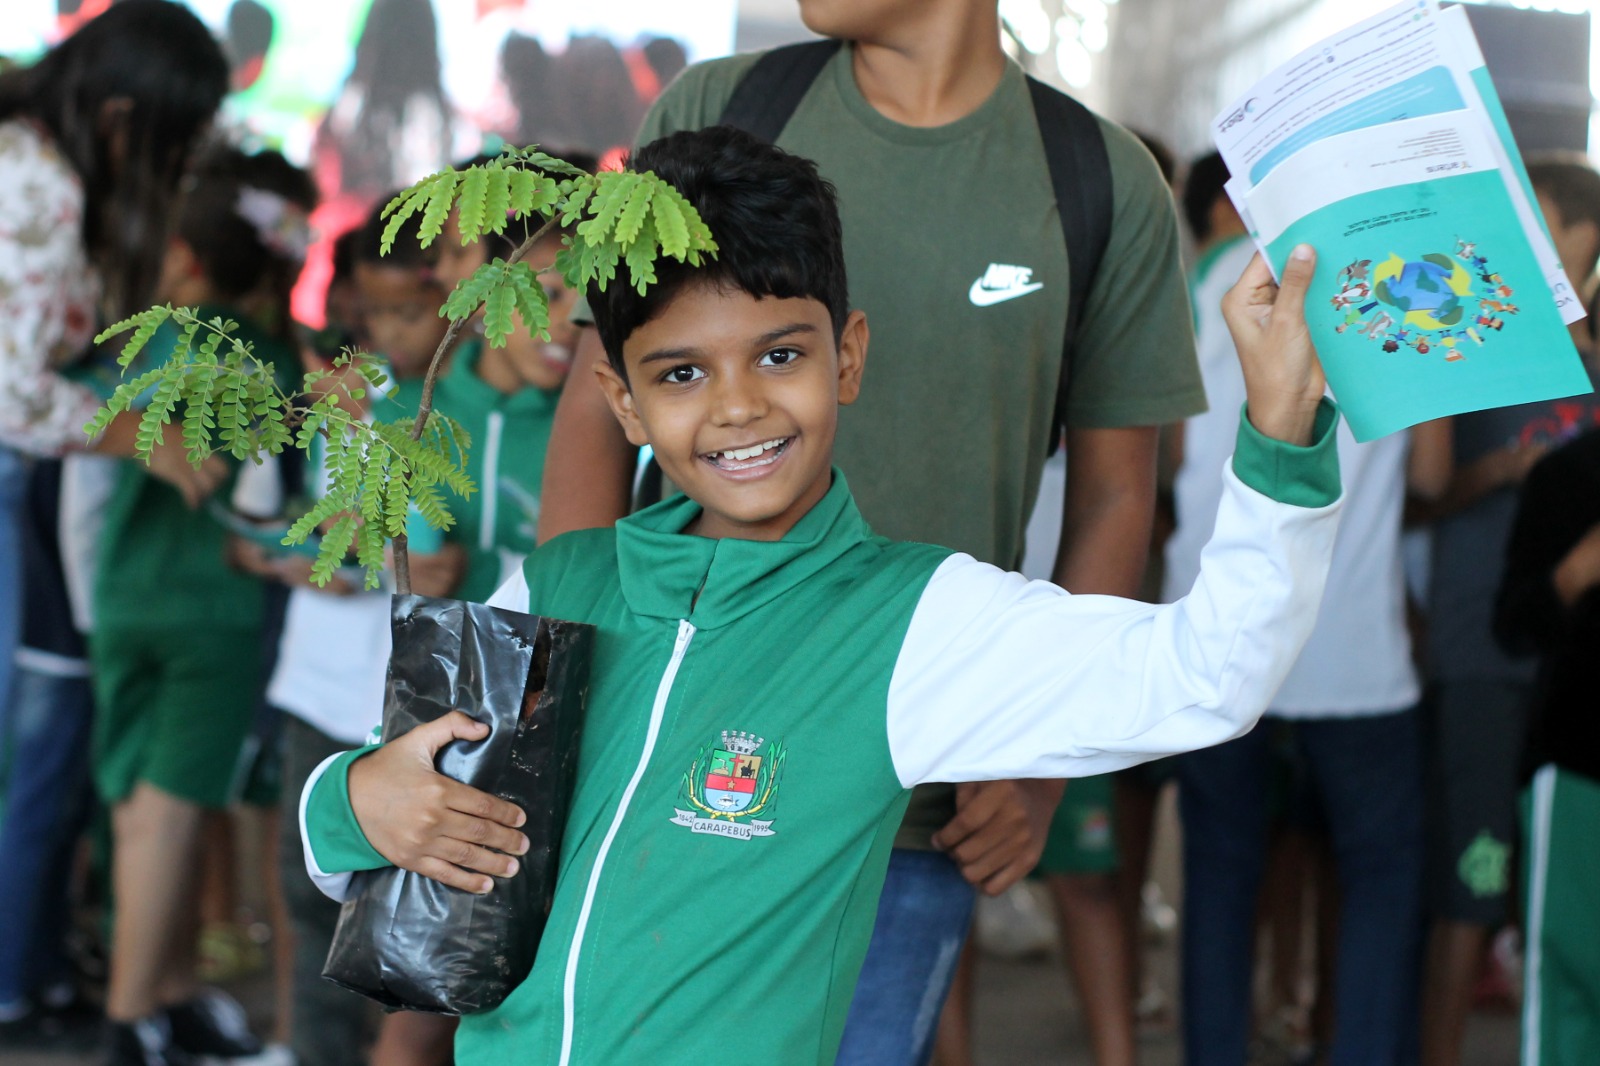 A participação na feira proporcionou aos alunos a conscientização sobre o uso responsável da água e formas de evitar desperdício e poluição